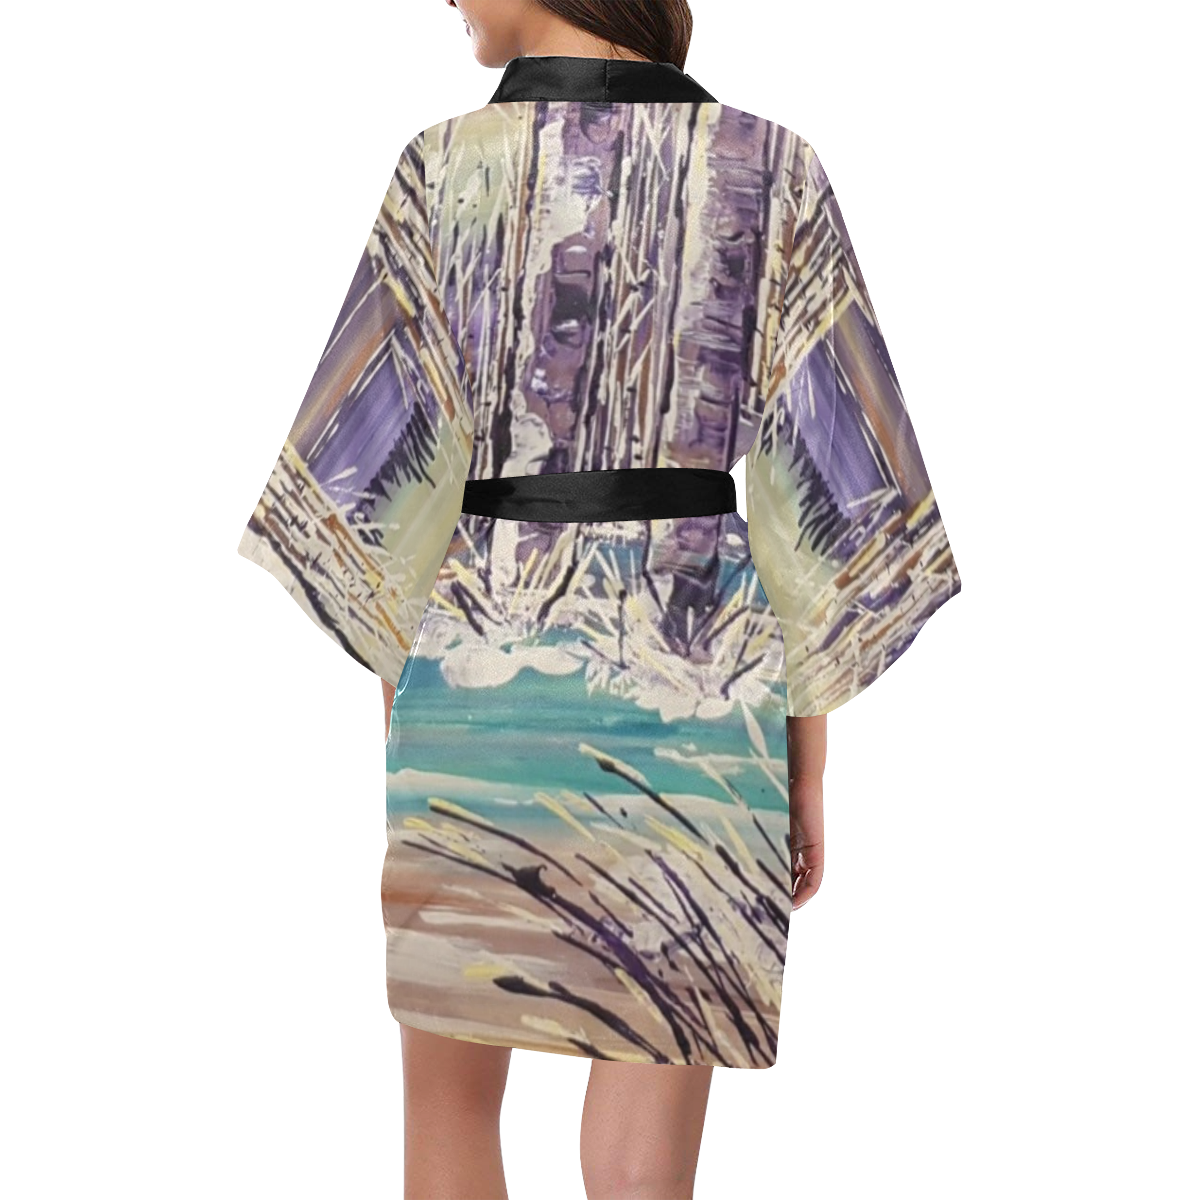 The Wading - Kimono Robe